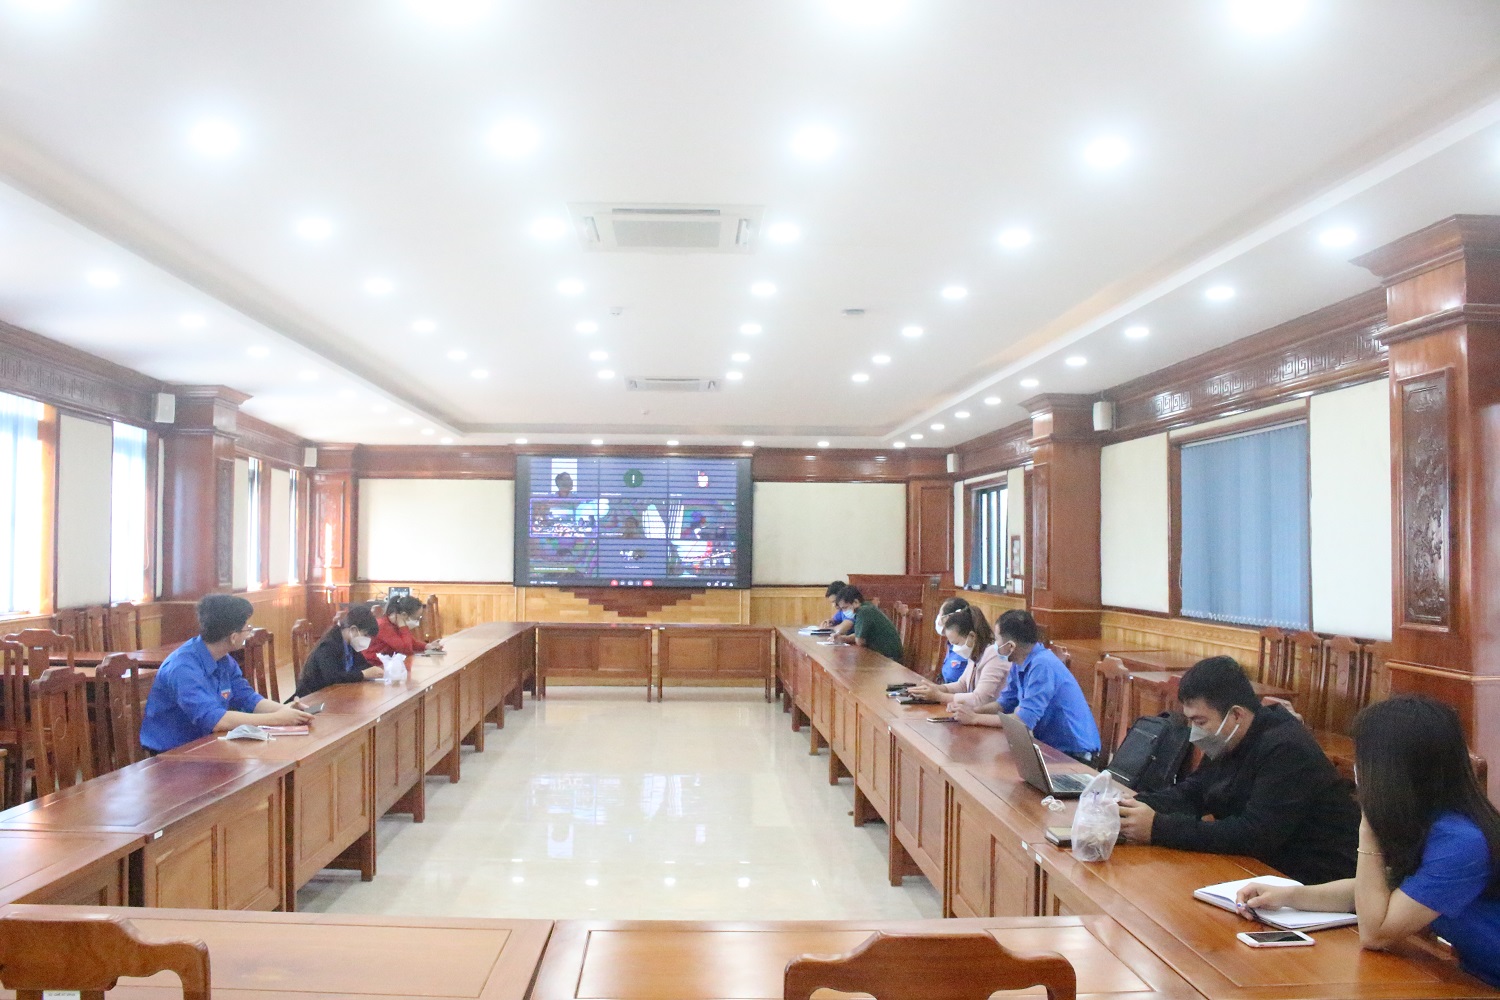 Cán bộ đoàn huyện Phú Riềng tham gia lớp bồi dưỡng kiến thức, kỹ năng nghiệp vụ tổ chức Đại hội đoàn.